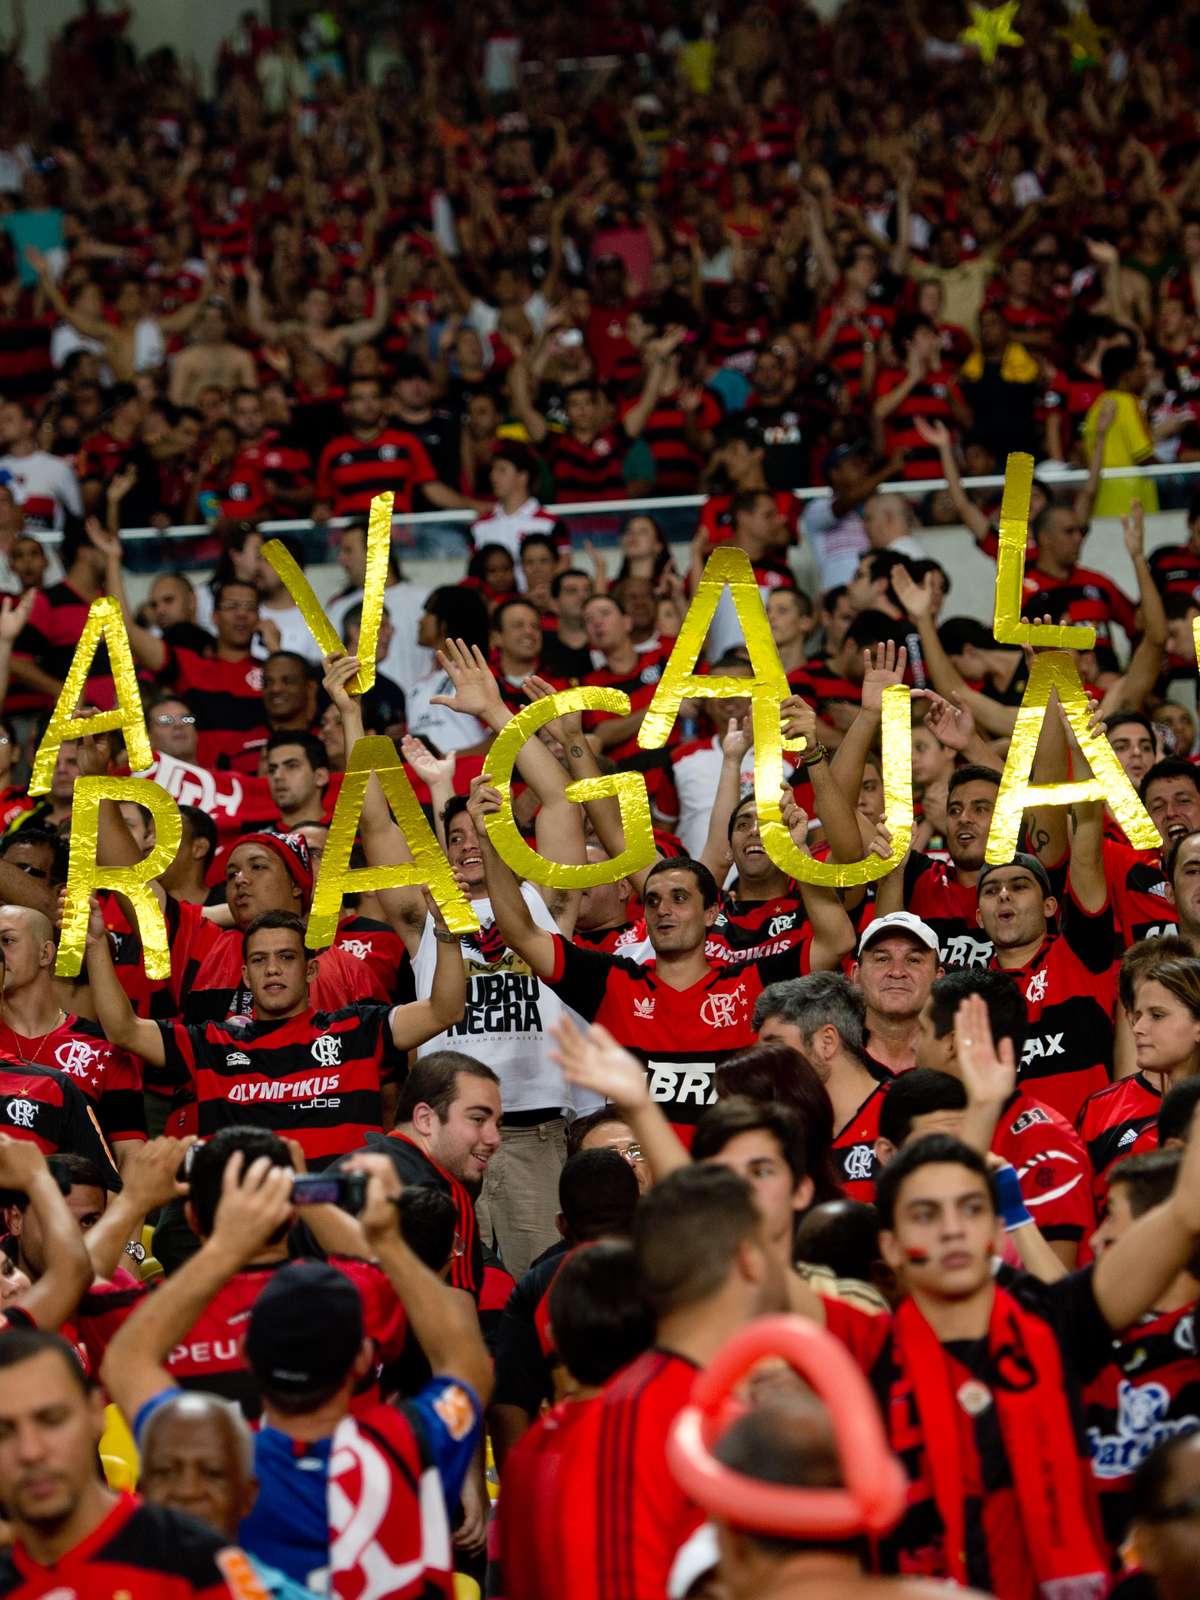 Enquanto no Flamengo ganha $250 mil, os milhões que Wesley ganharia no  Sporting